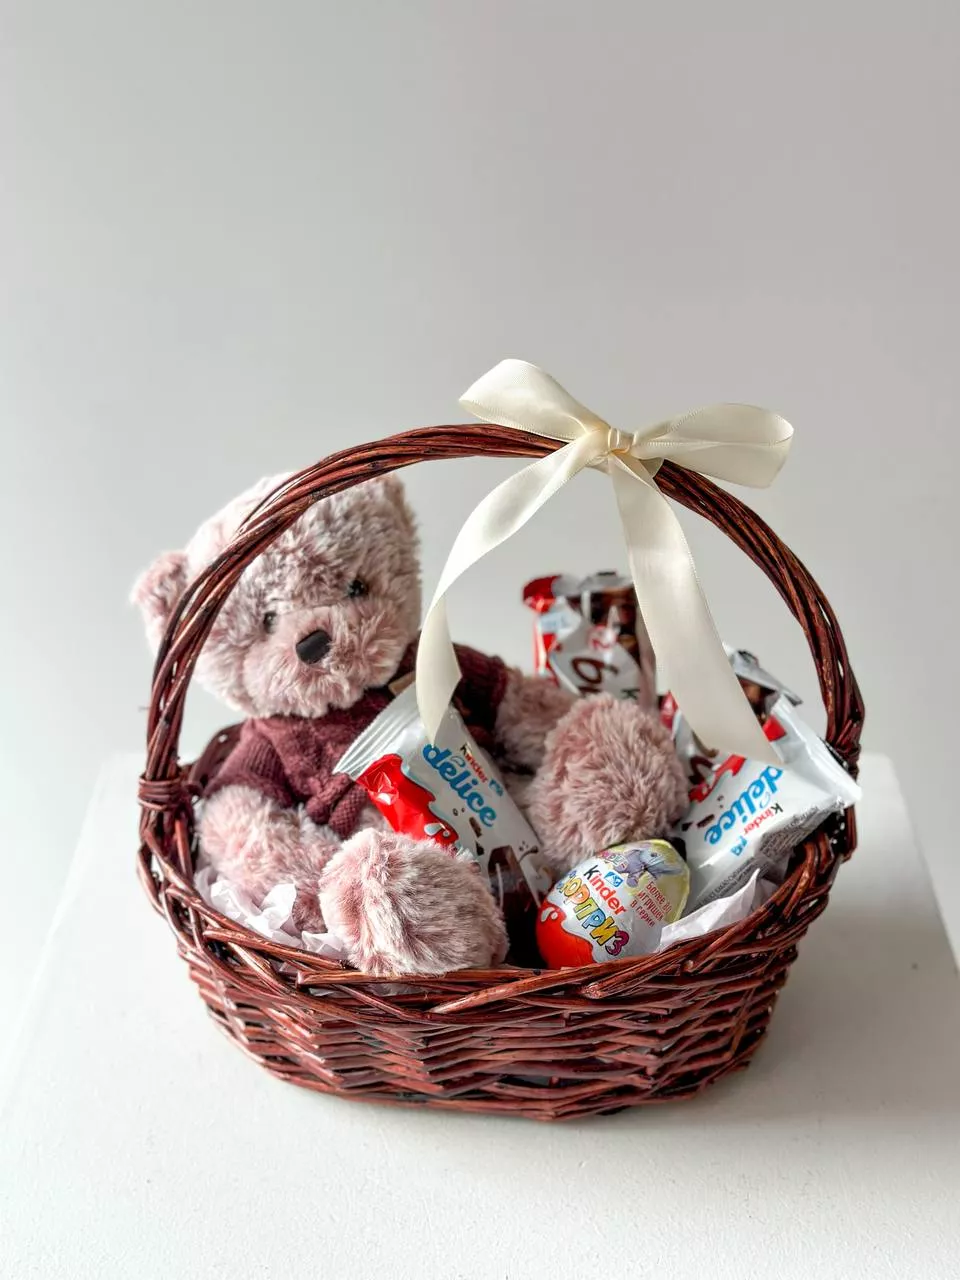 Подарочная корзина "Lovely teddy" игрушечный мишка и сладости